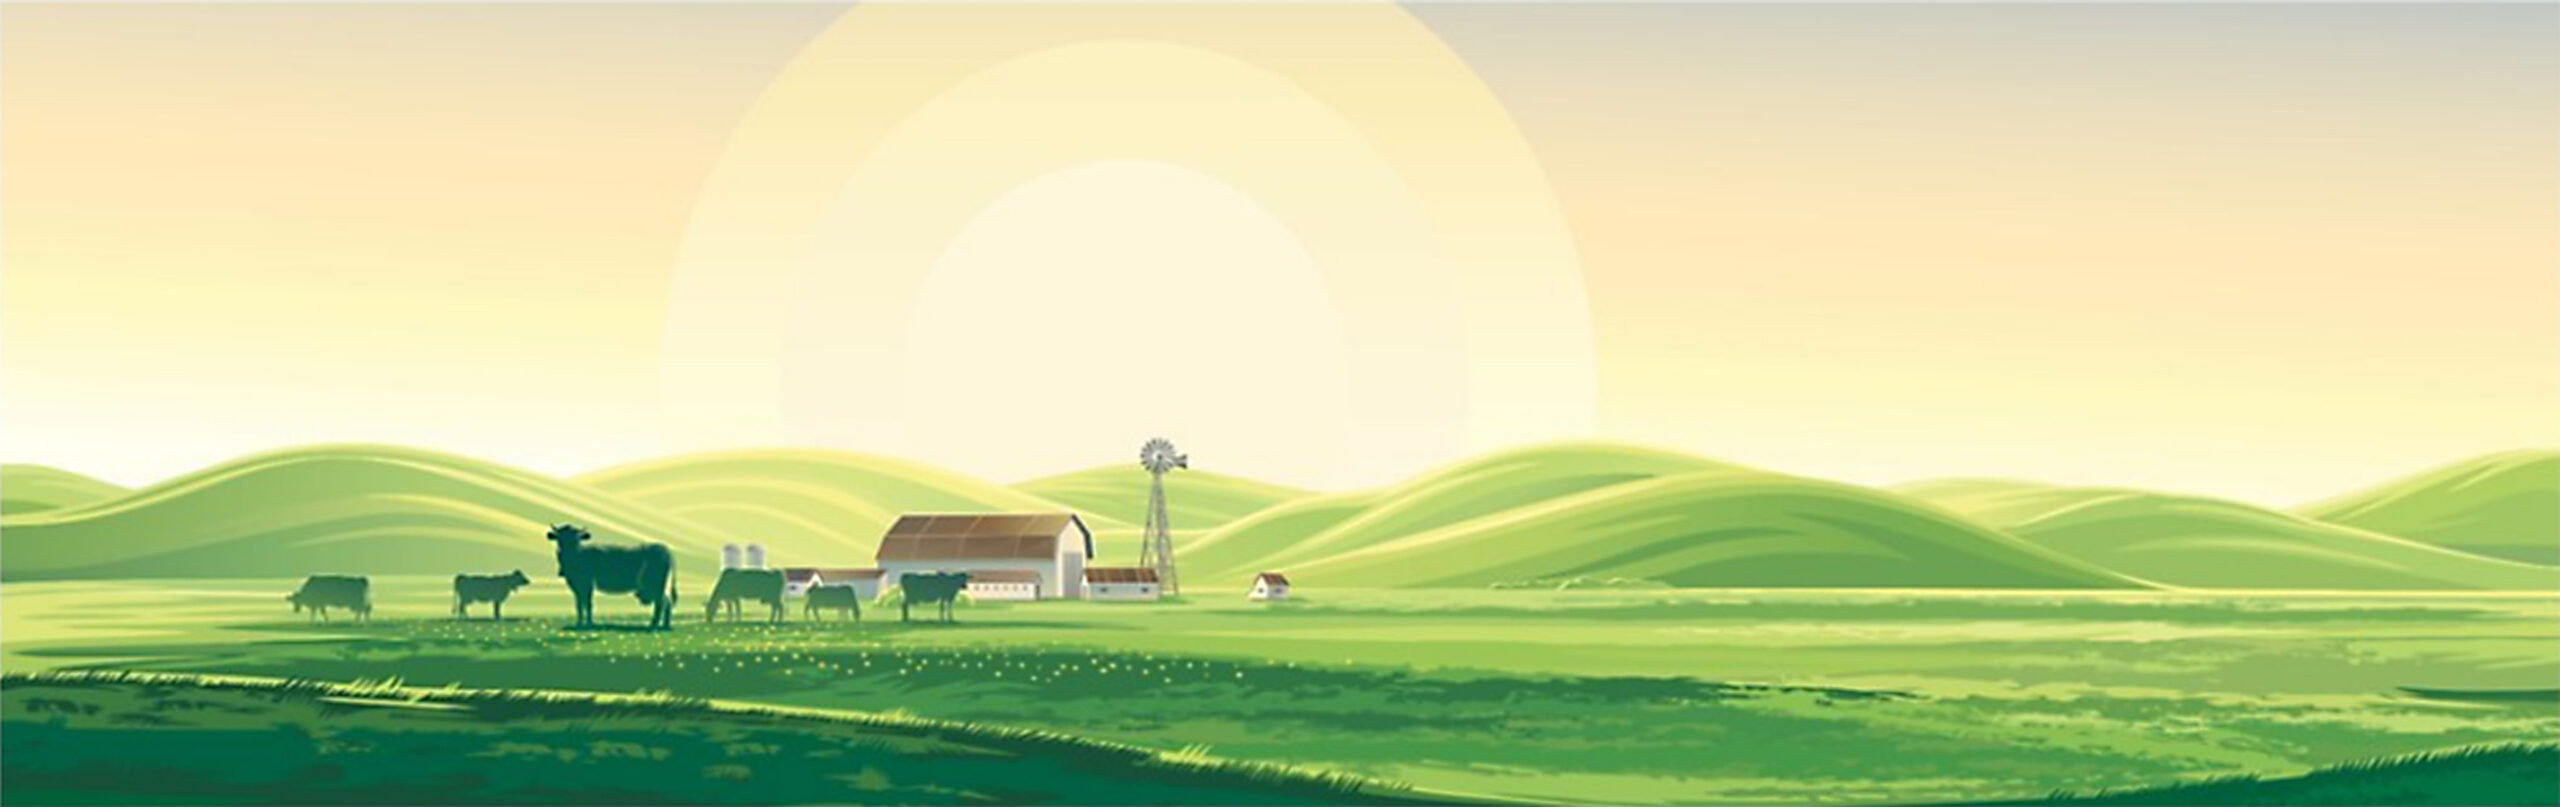 Farm Scene Graphic